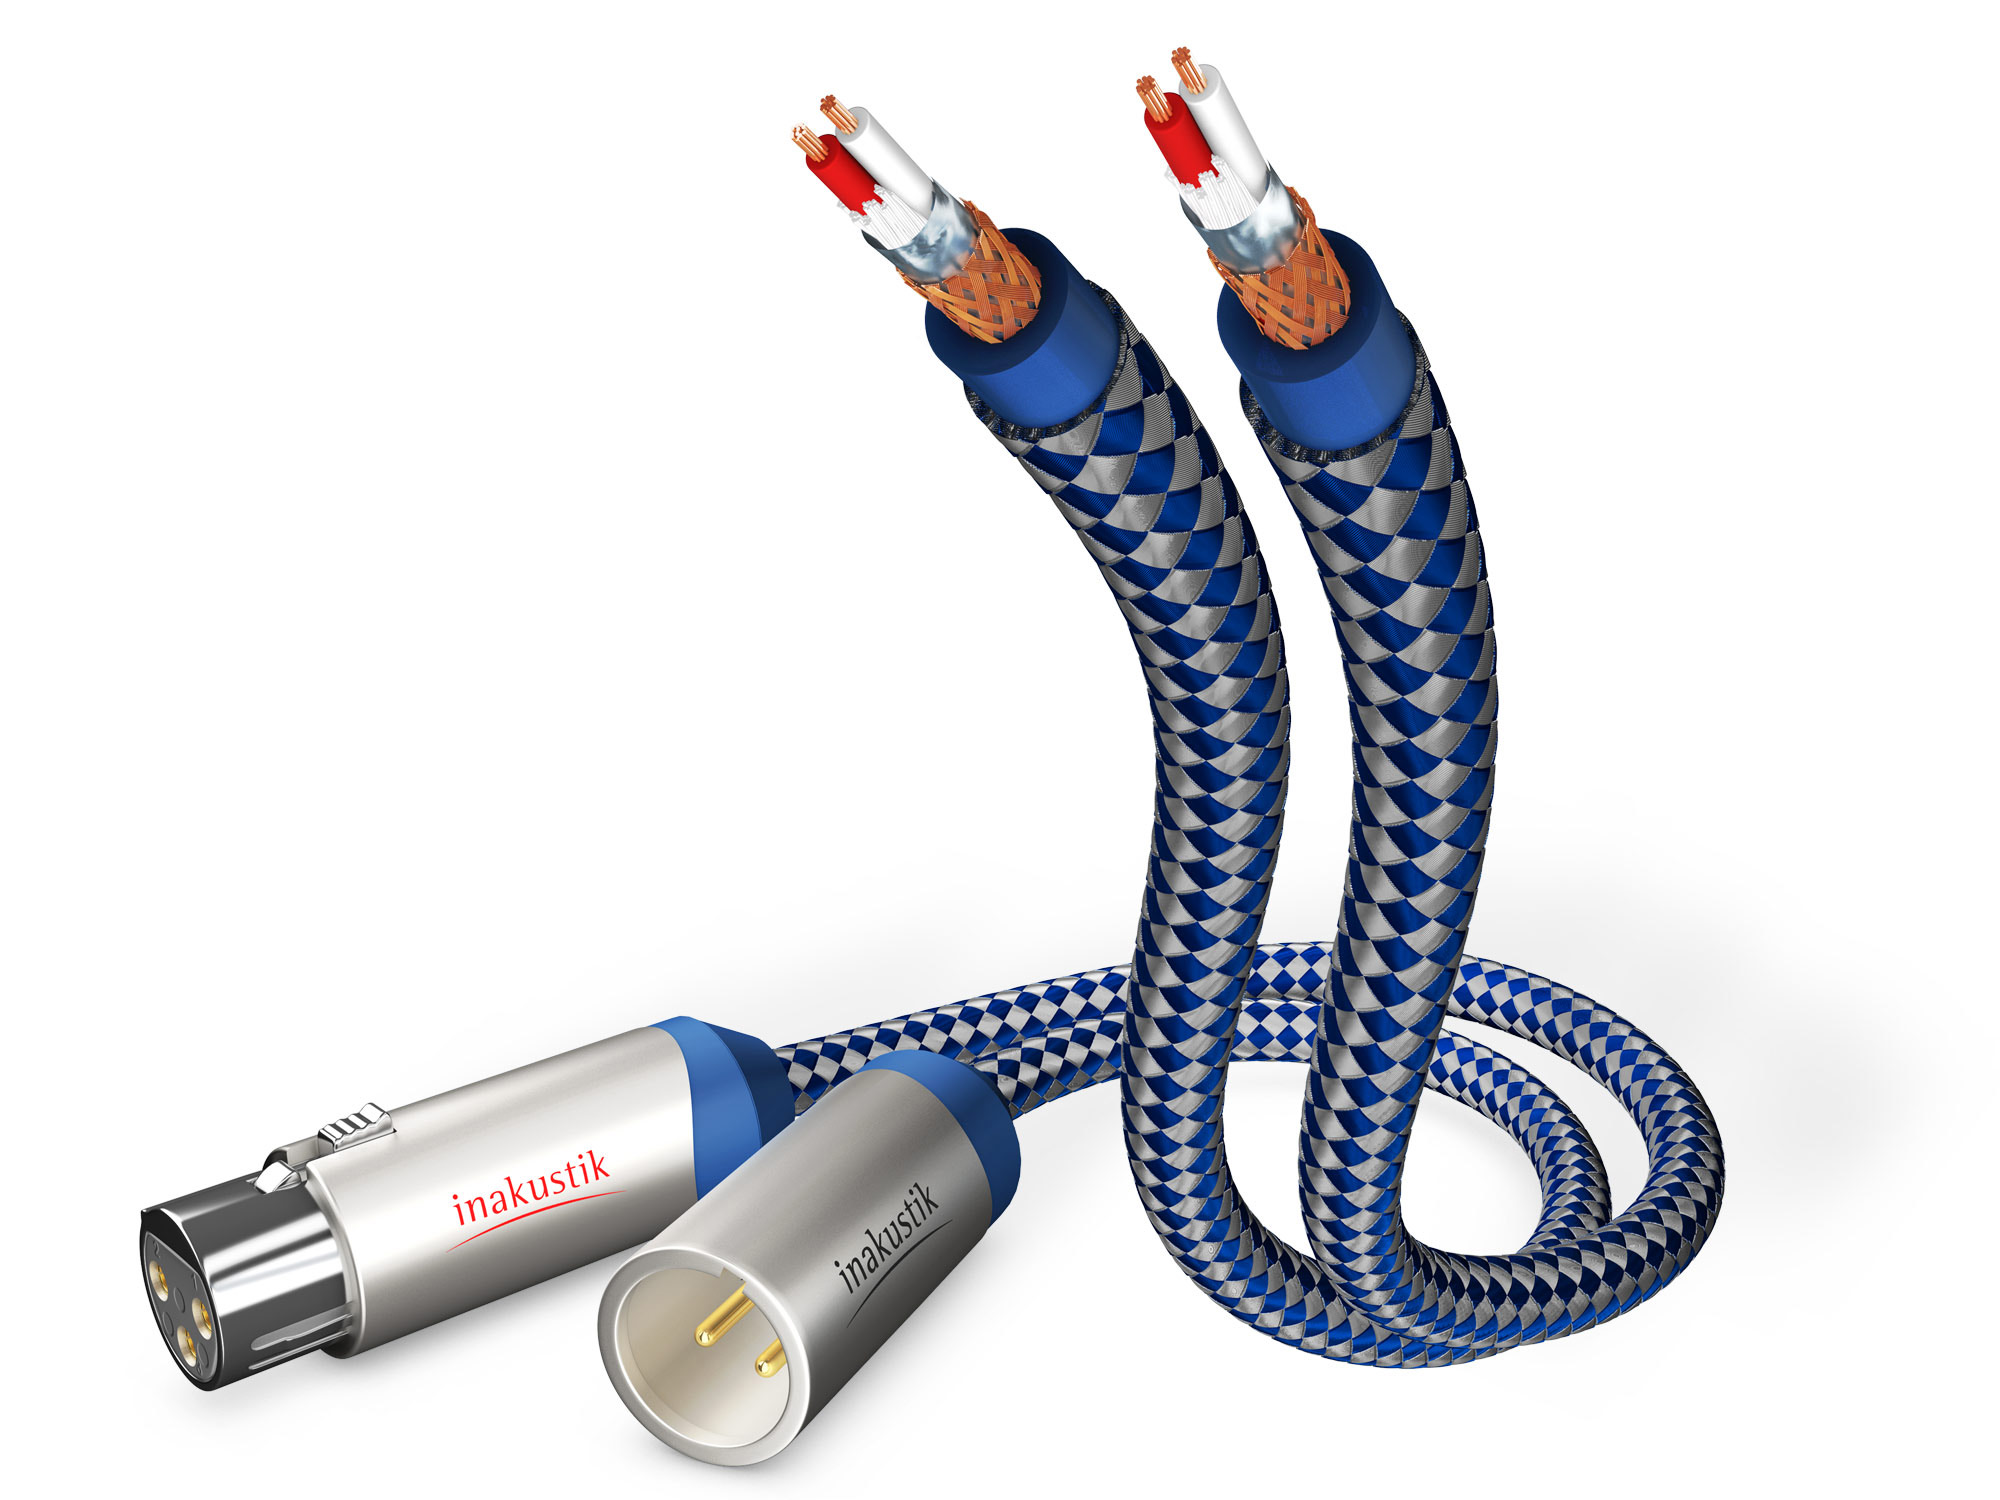 INAKUSTIK Premium XLR 0,75m audio cable